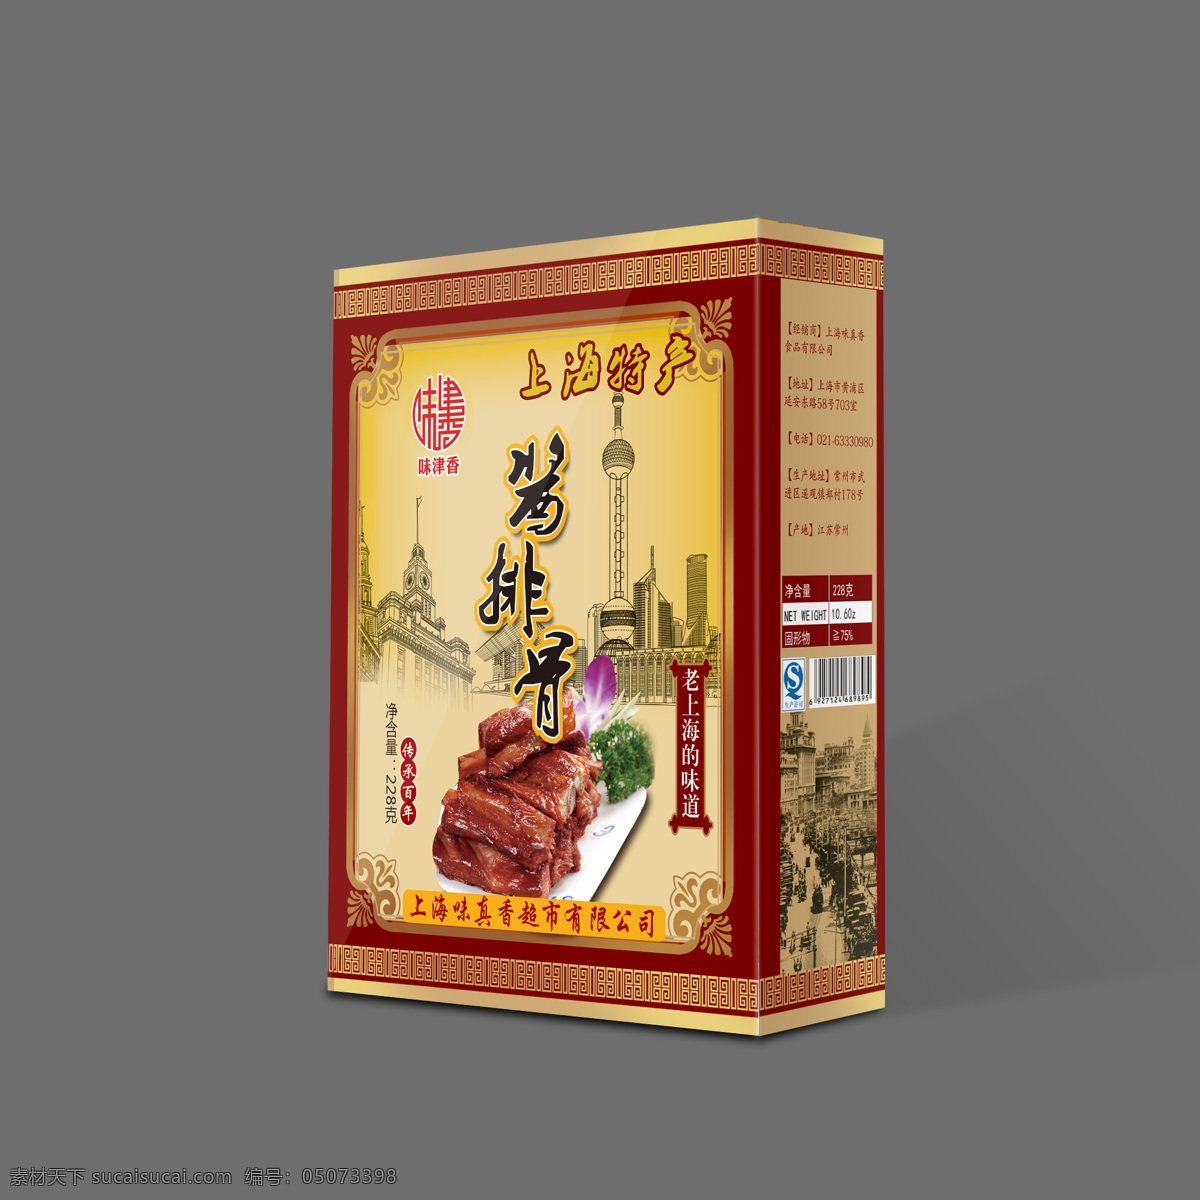 上海 特产 酱 排骨 包装设计 酱排骨 包装